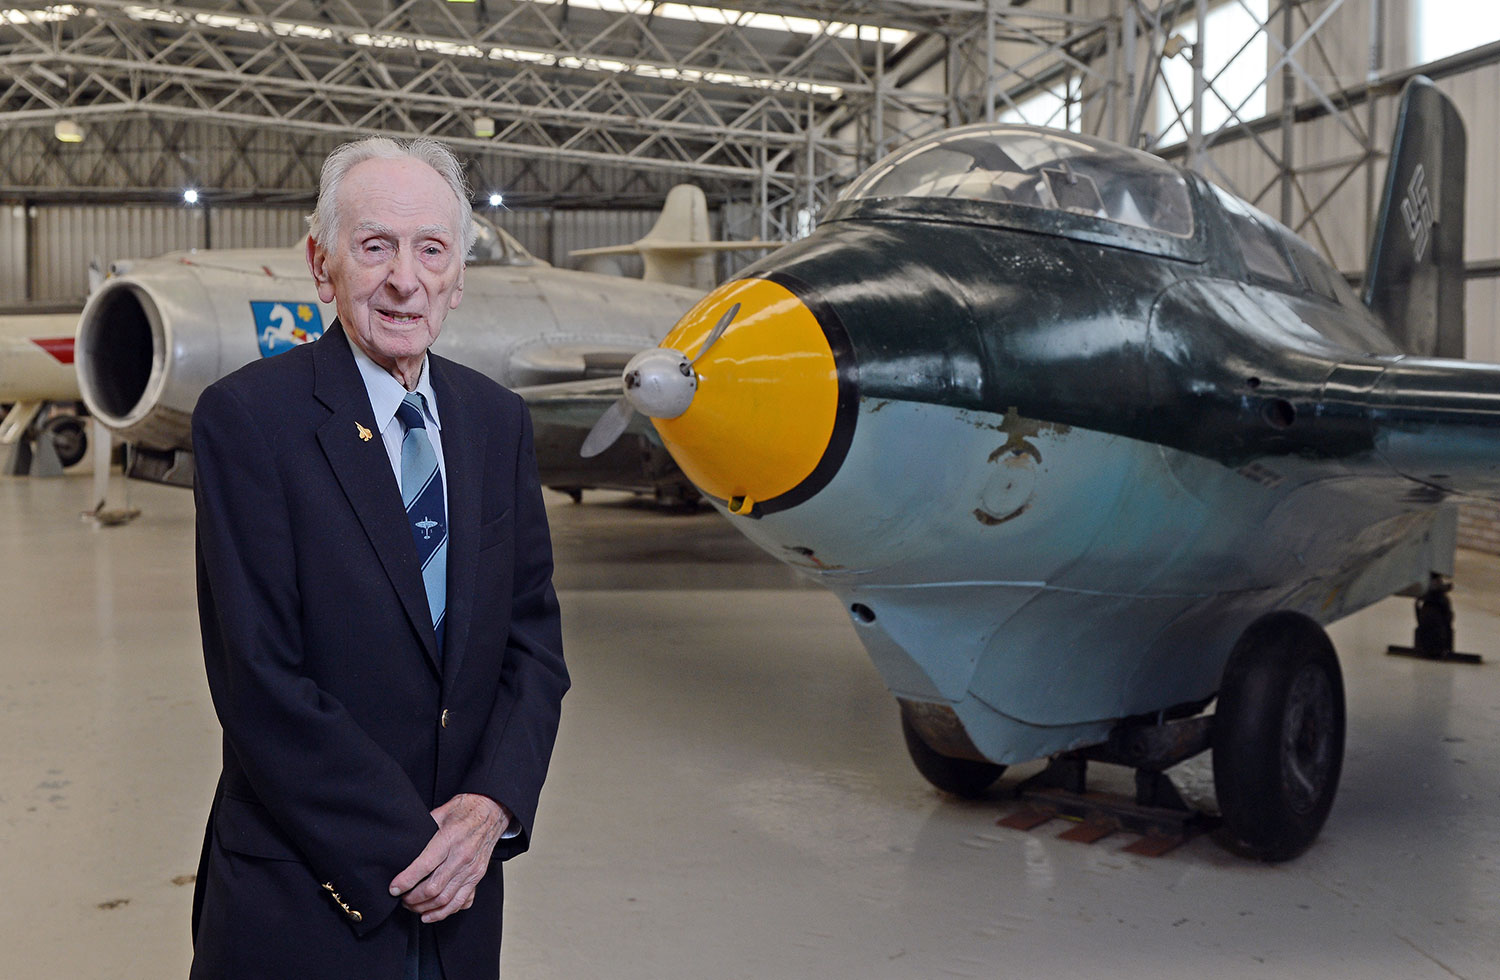 A former pilot, Captain Eric Brown, standing next to a Messerschmitt Komet aircraft in a large aviation hangar.